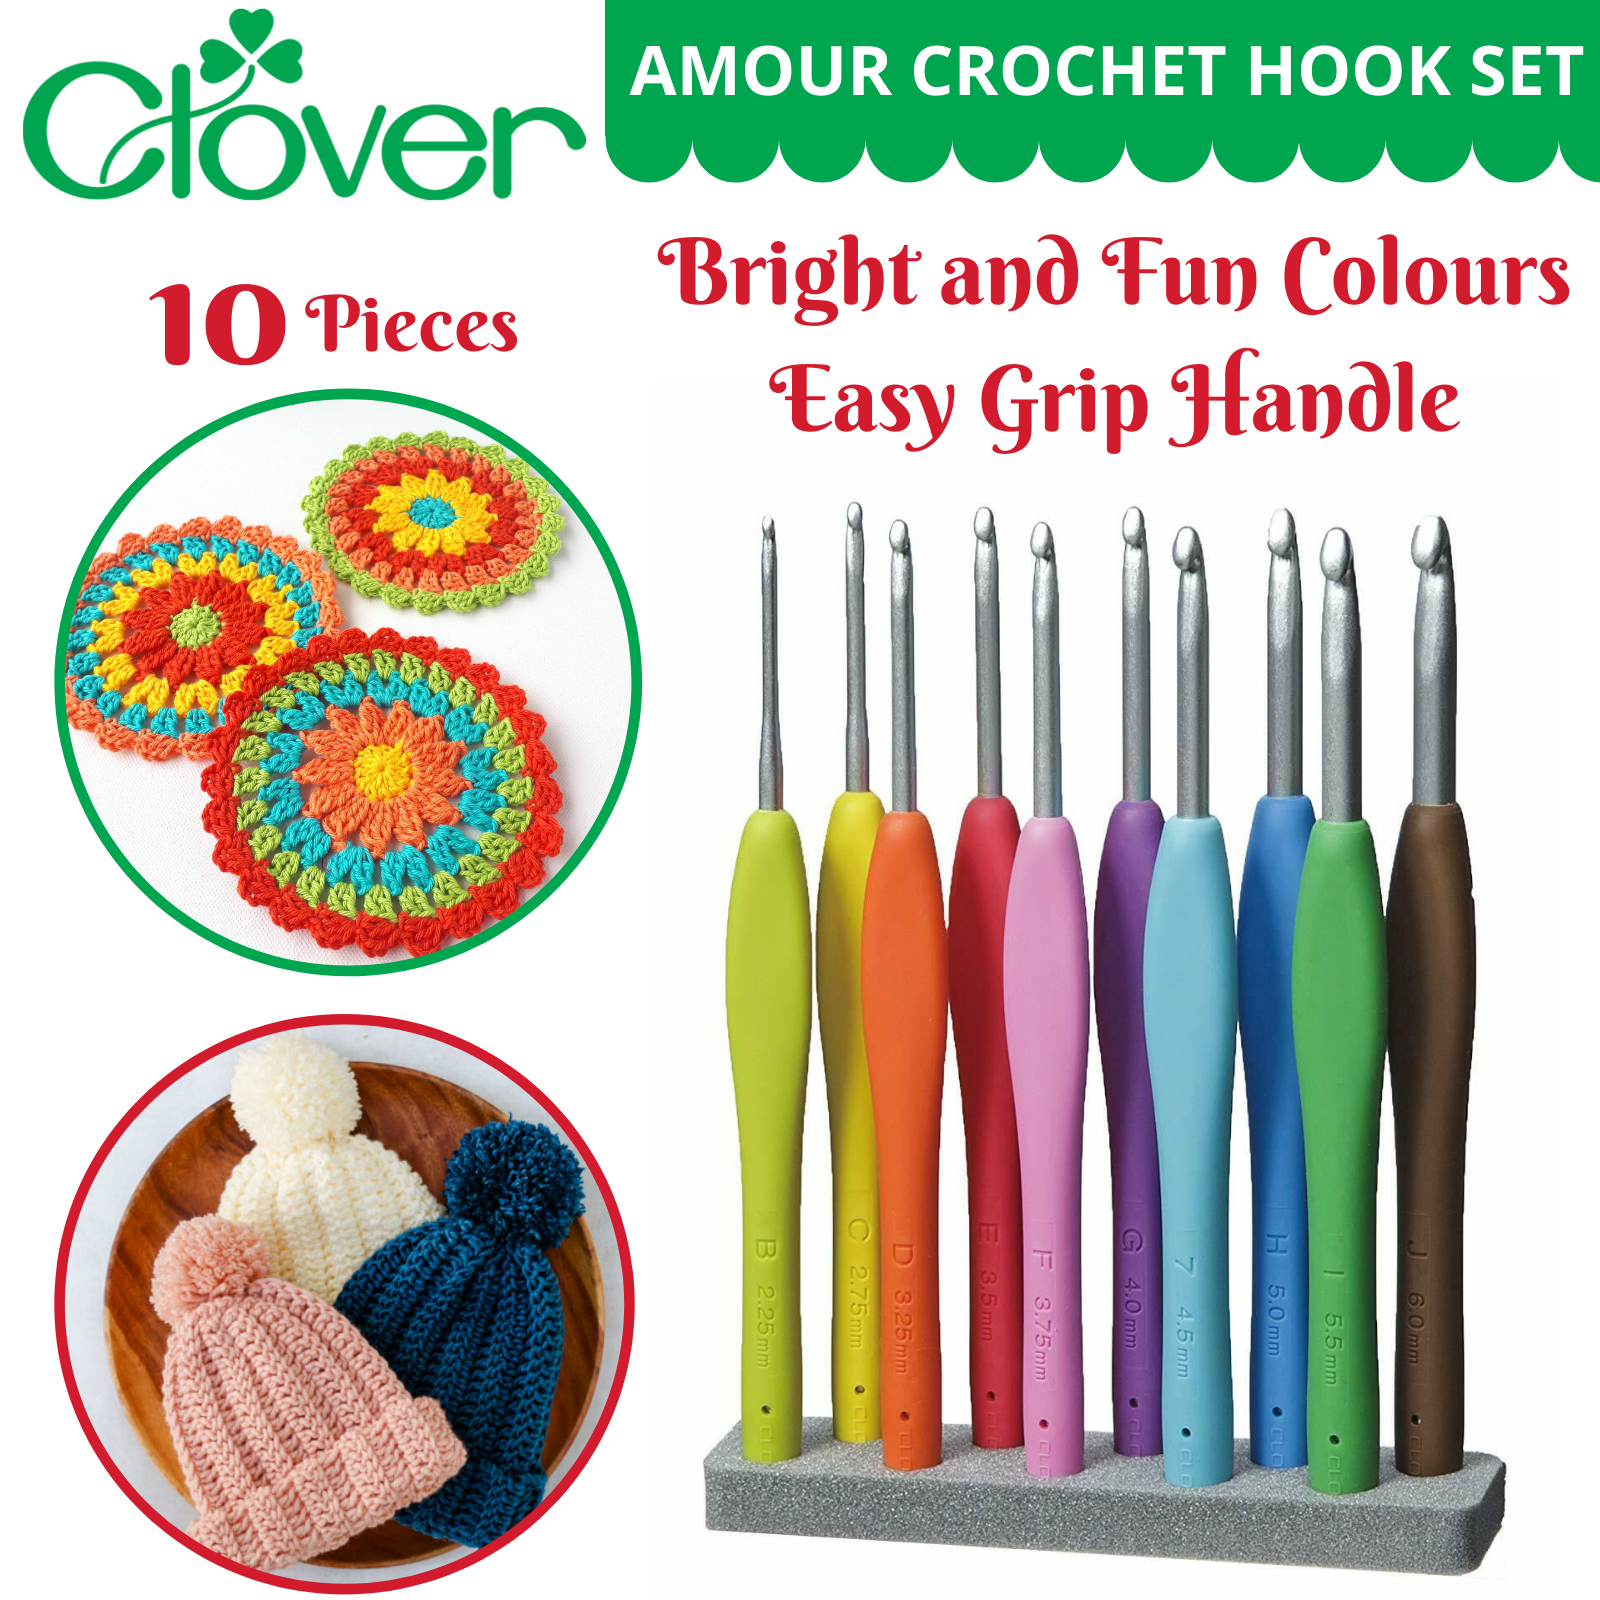 Clover Amour crochet hook set